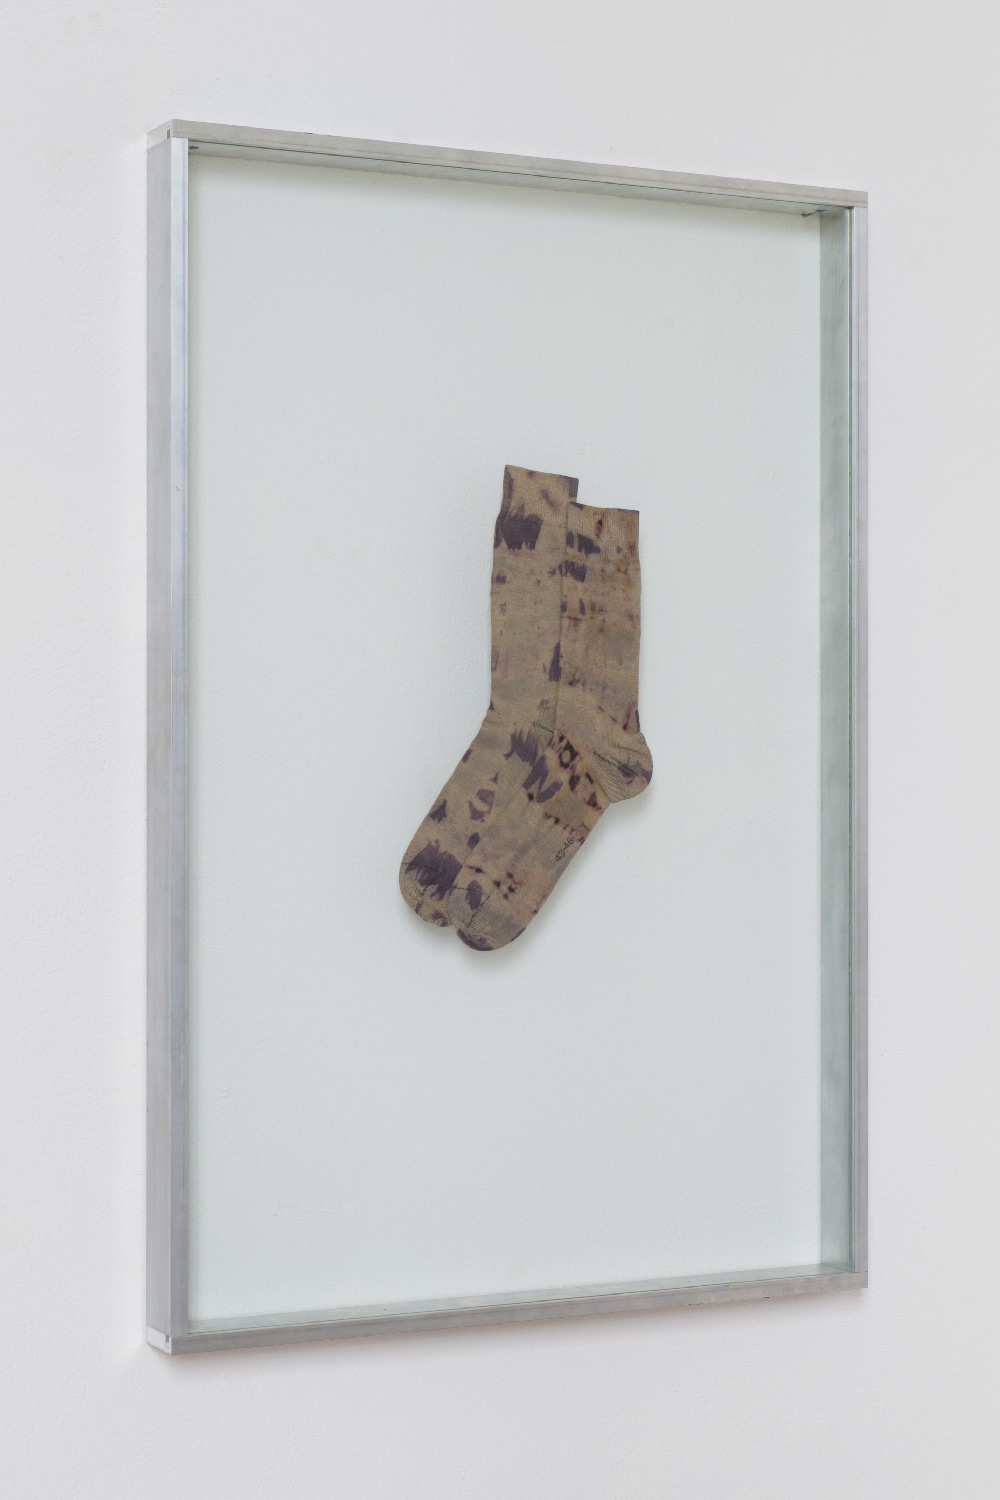 Michael Part and Constanze Schweiger, Untitled (batik sox), 2015